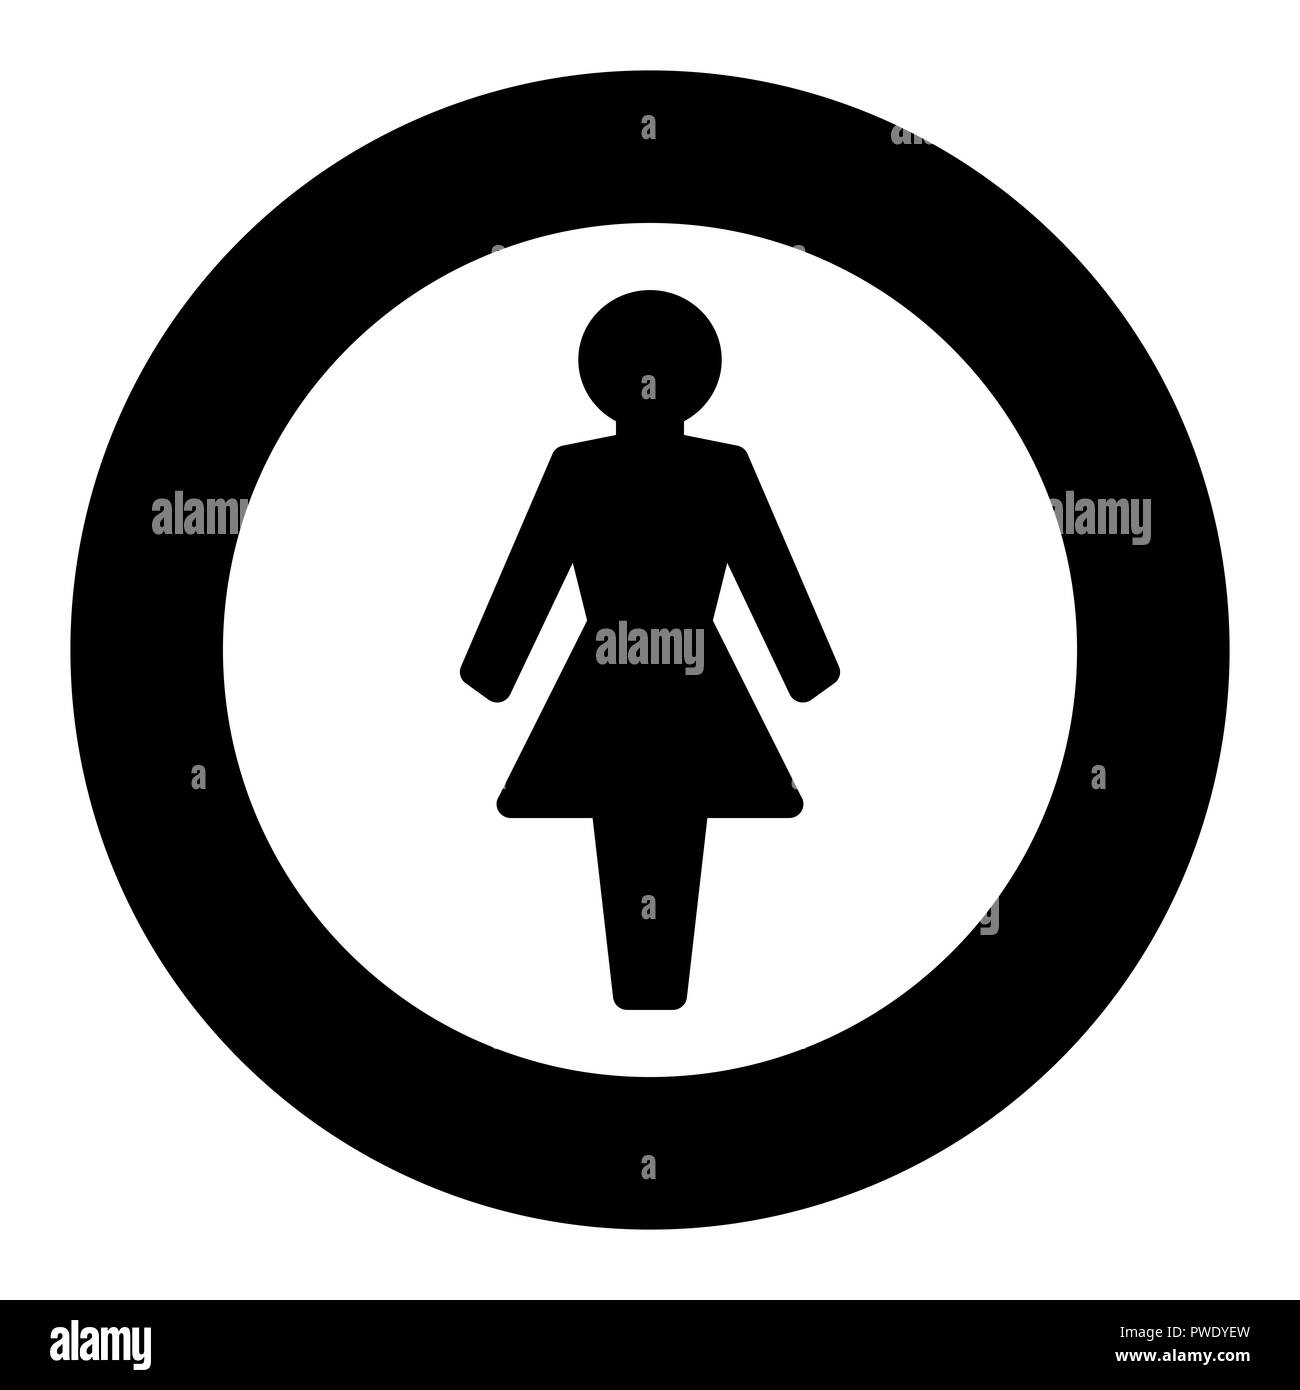 Donna logo rotondo, telaio nero. Illustrazione semplice su sfondo bianco. Foto Stock